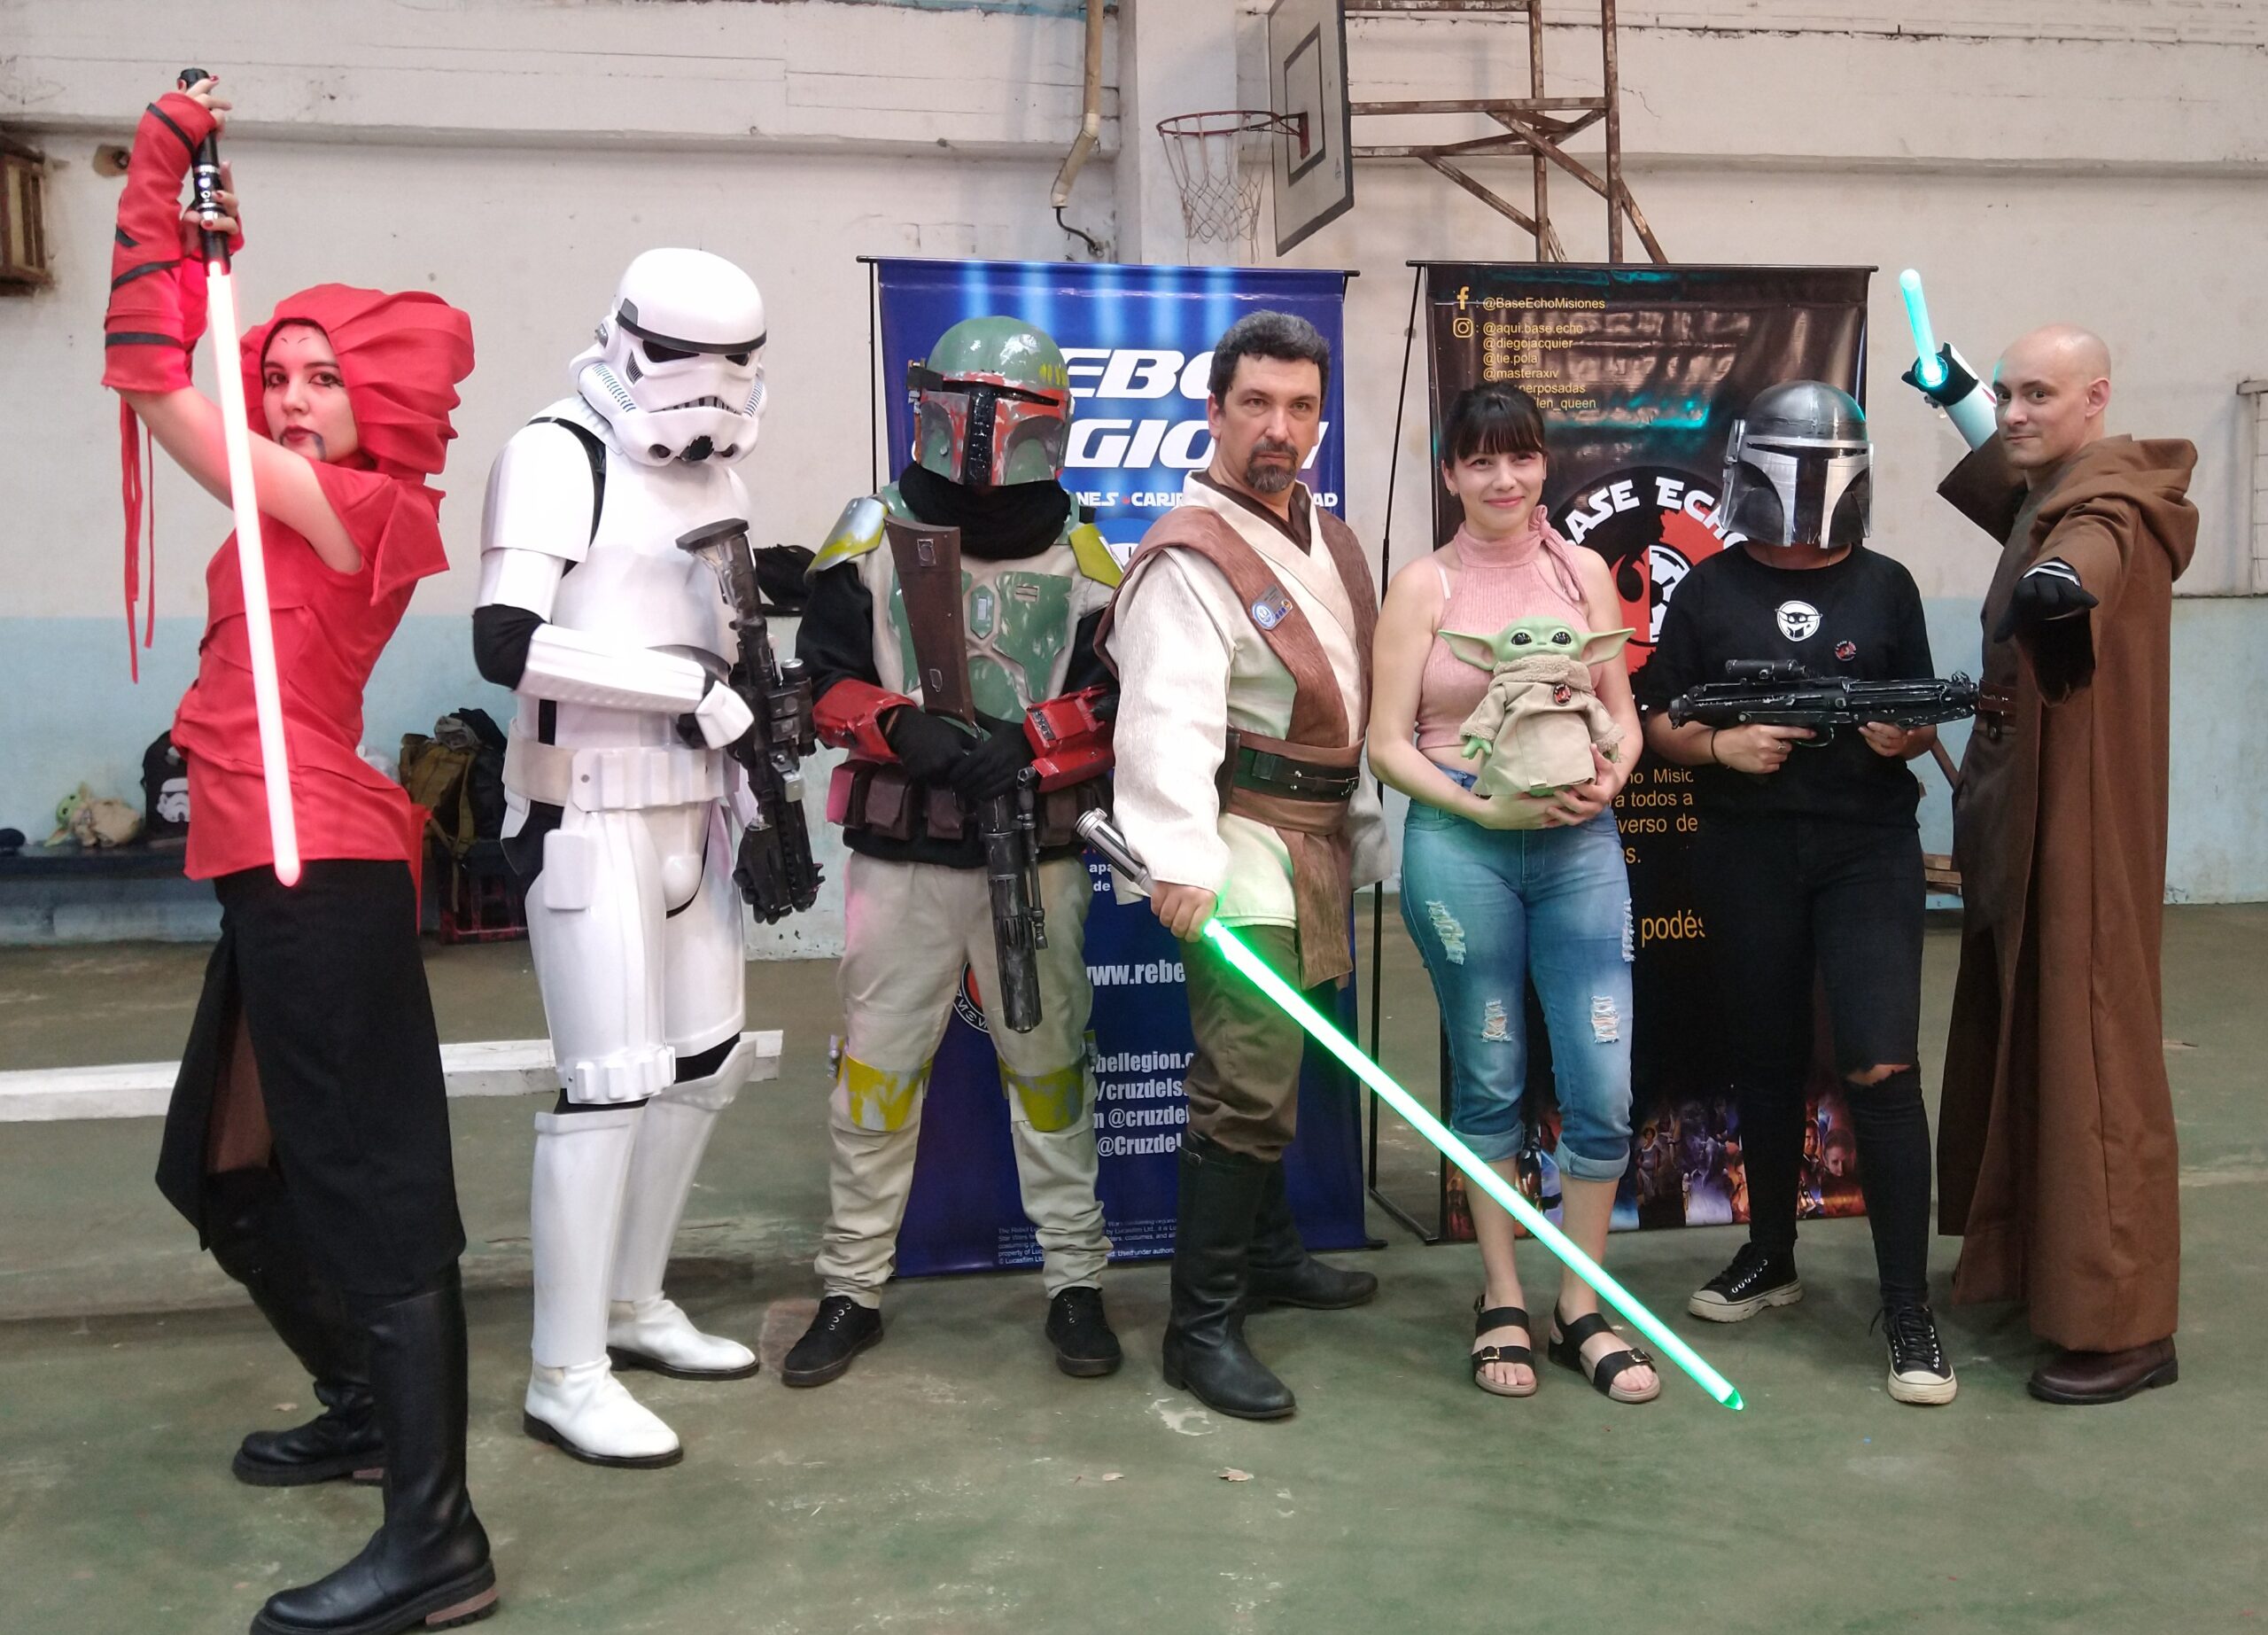 Los fanáticos de Star Wars celebrarán en el “The May Fourth Iguazu”